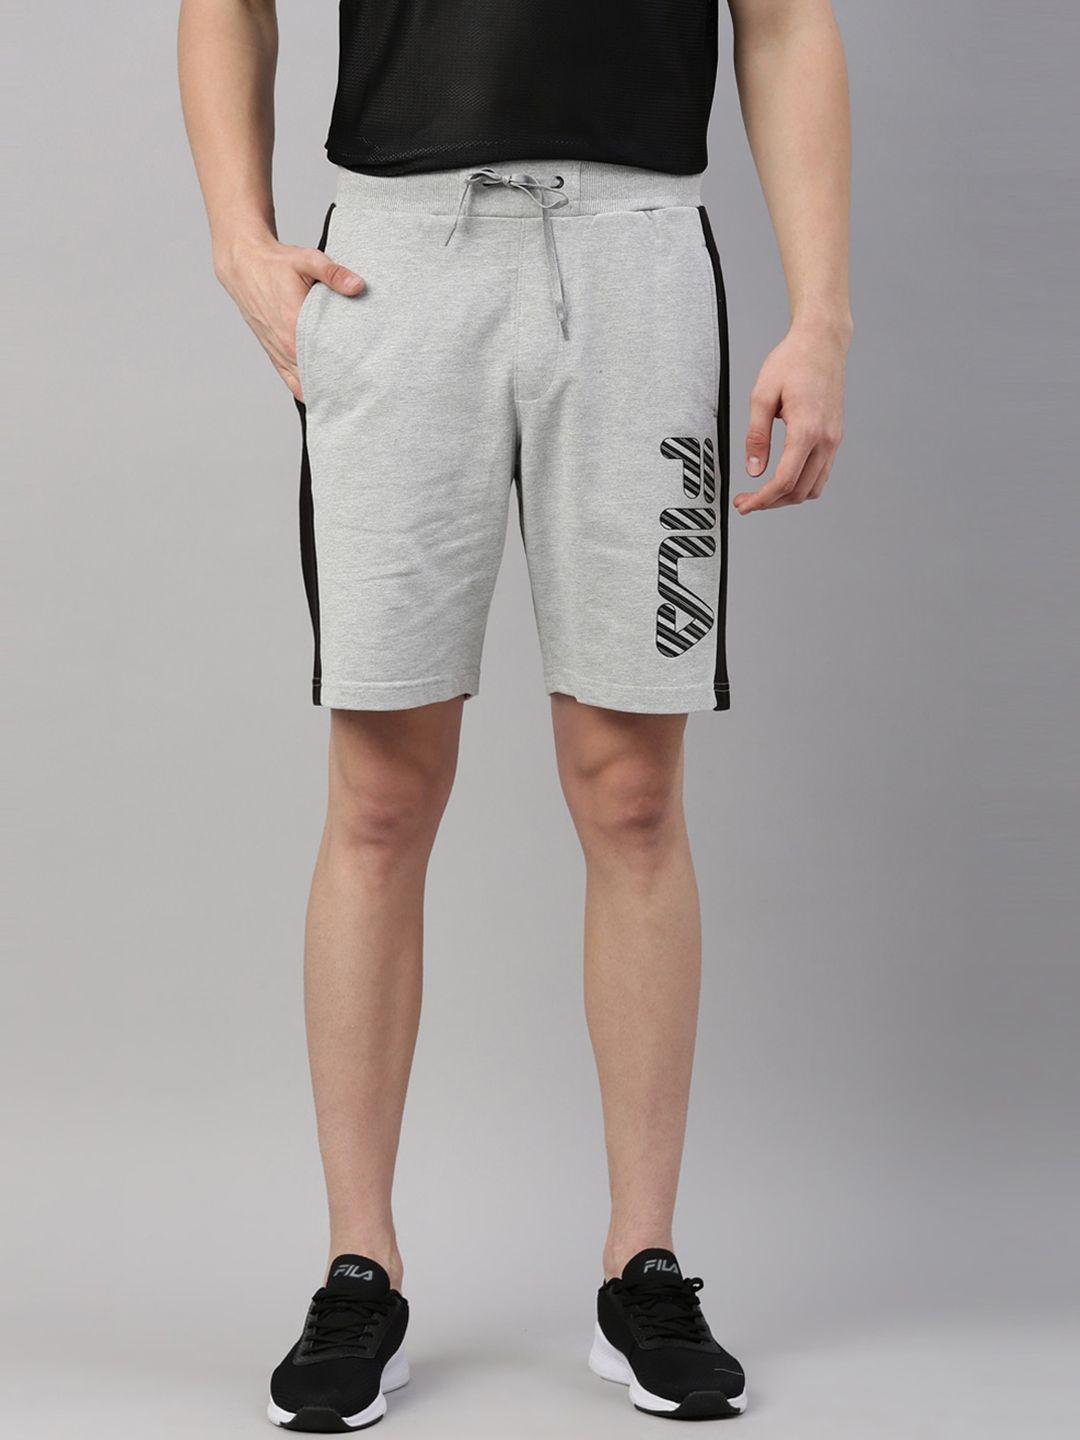 fila-men-grey-training-or-gym-sports-shorts